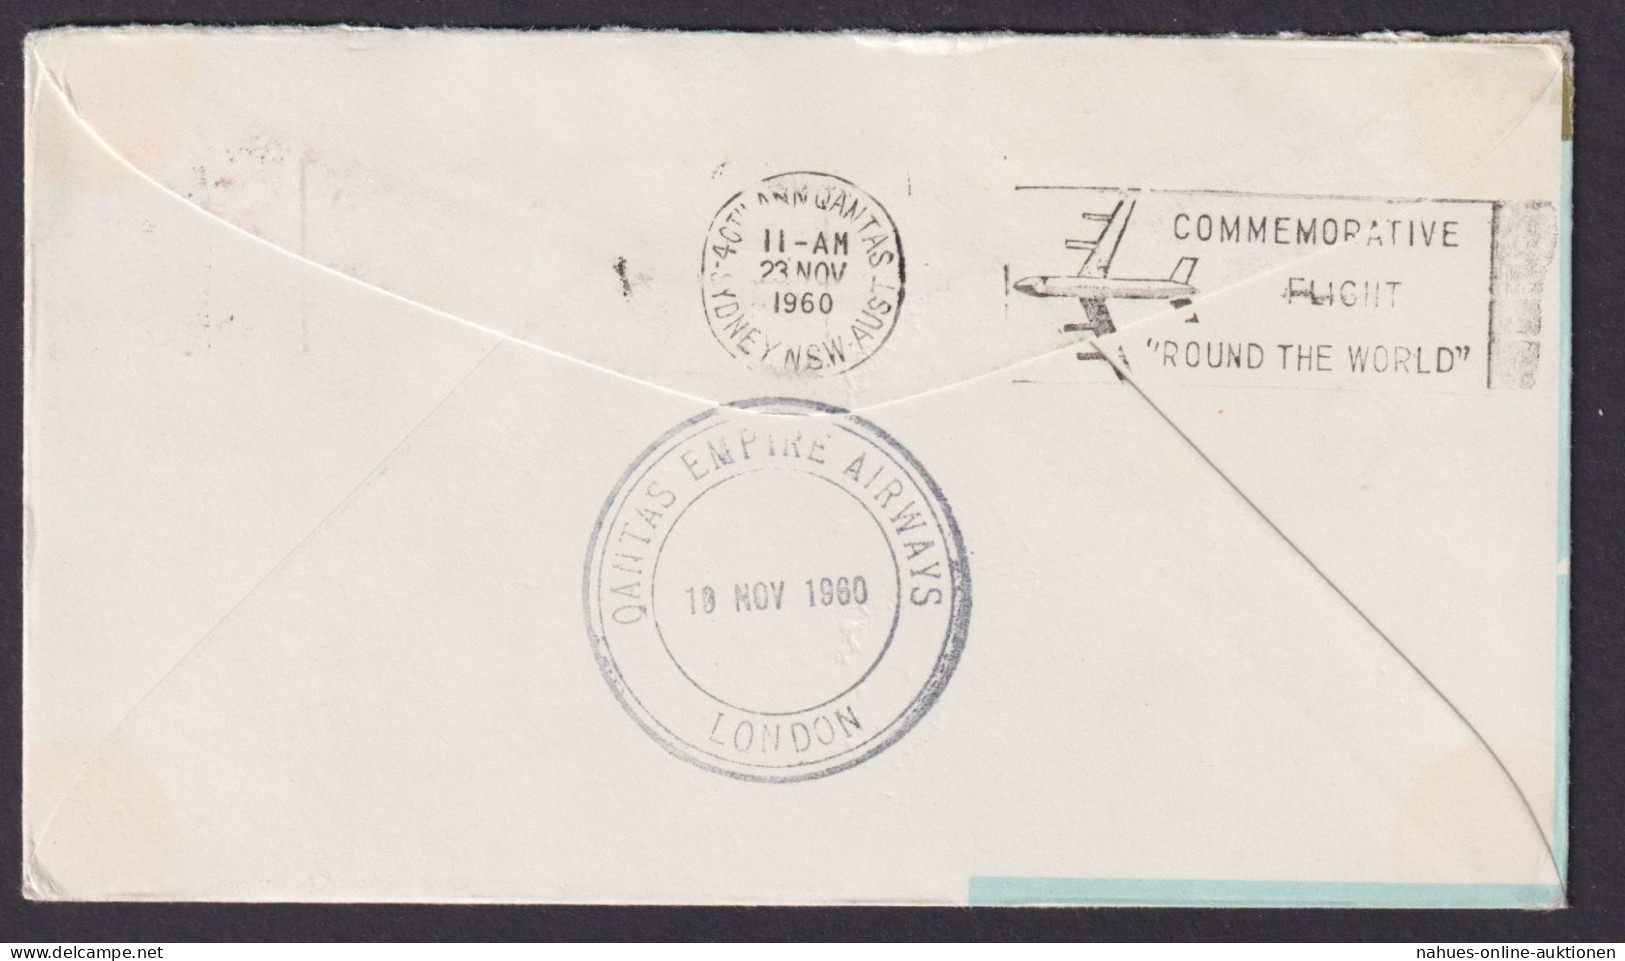 Flugpost Air Mail Brief Australien EF 5 Sh. Boeing 707 Qantas Nach Sydney New - Collections